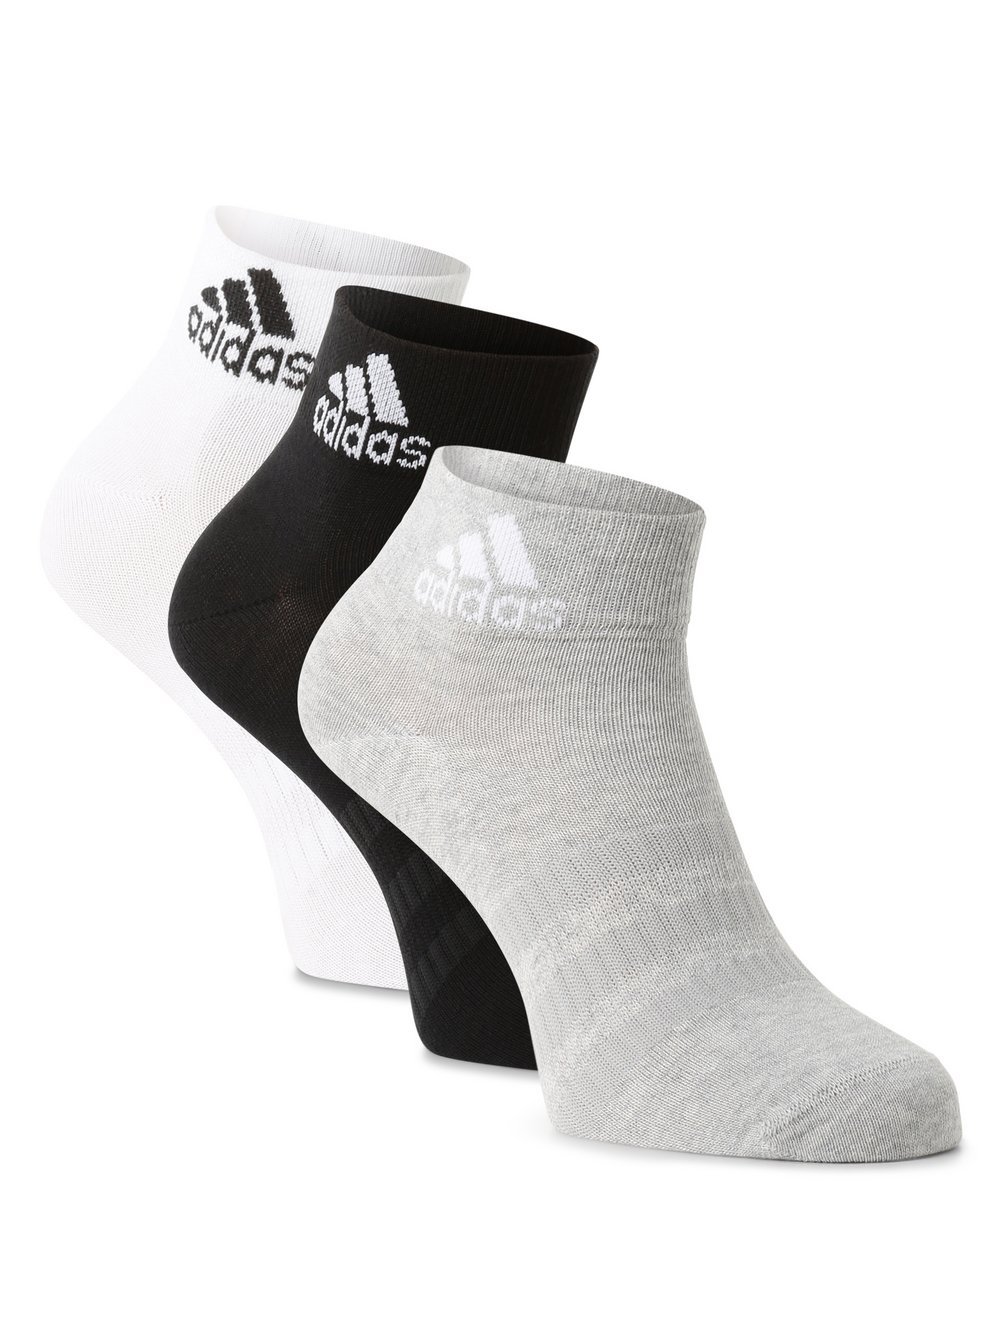 Obraz przedstawiający adidas Originals Skarpety pakowane po 3 szt. Kobiety Bawełna czarny|biały|szary jednolity, M